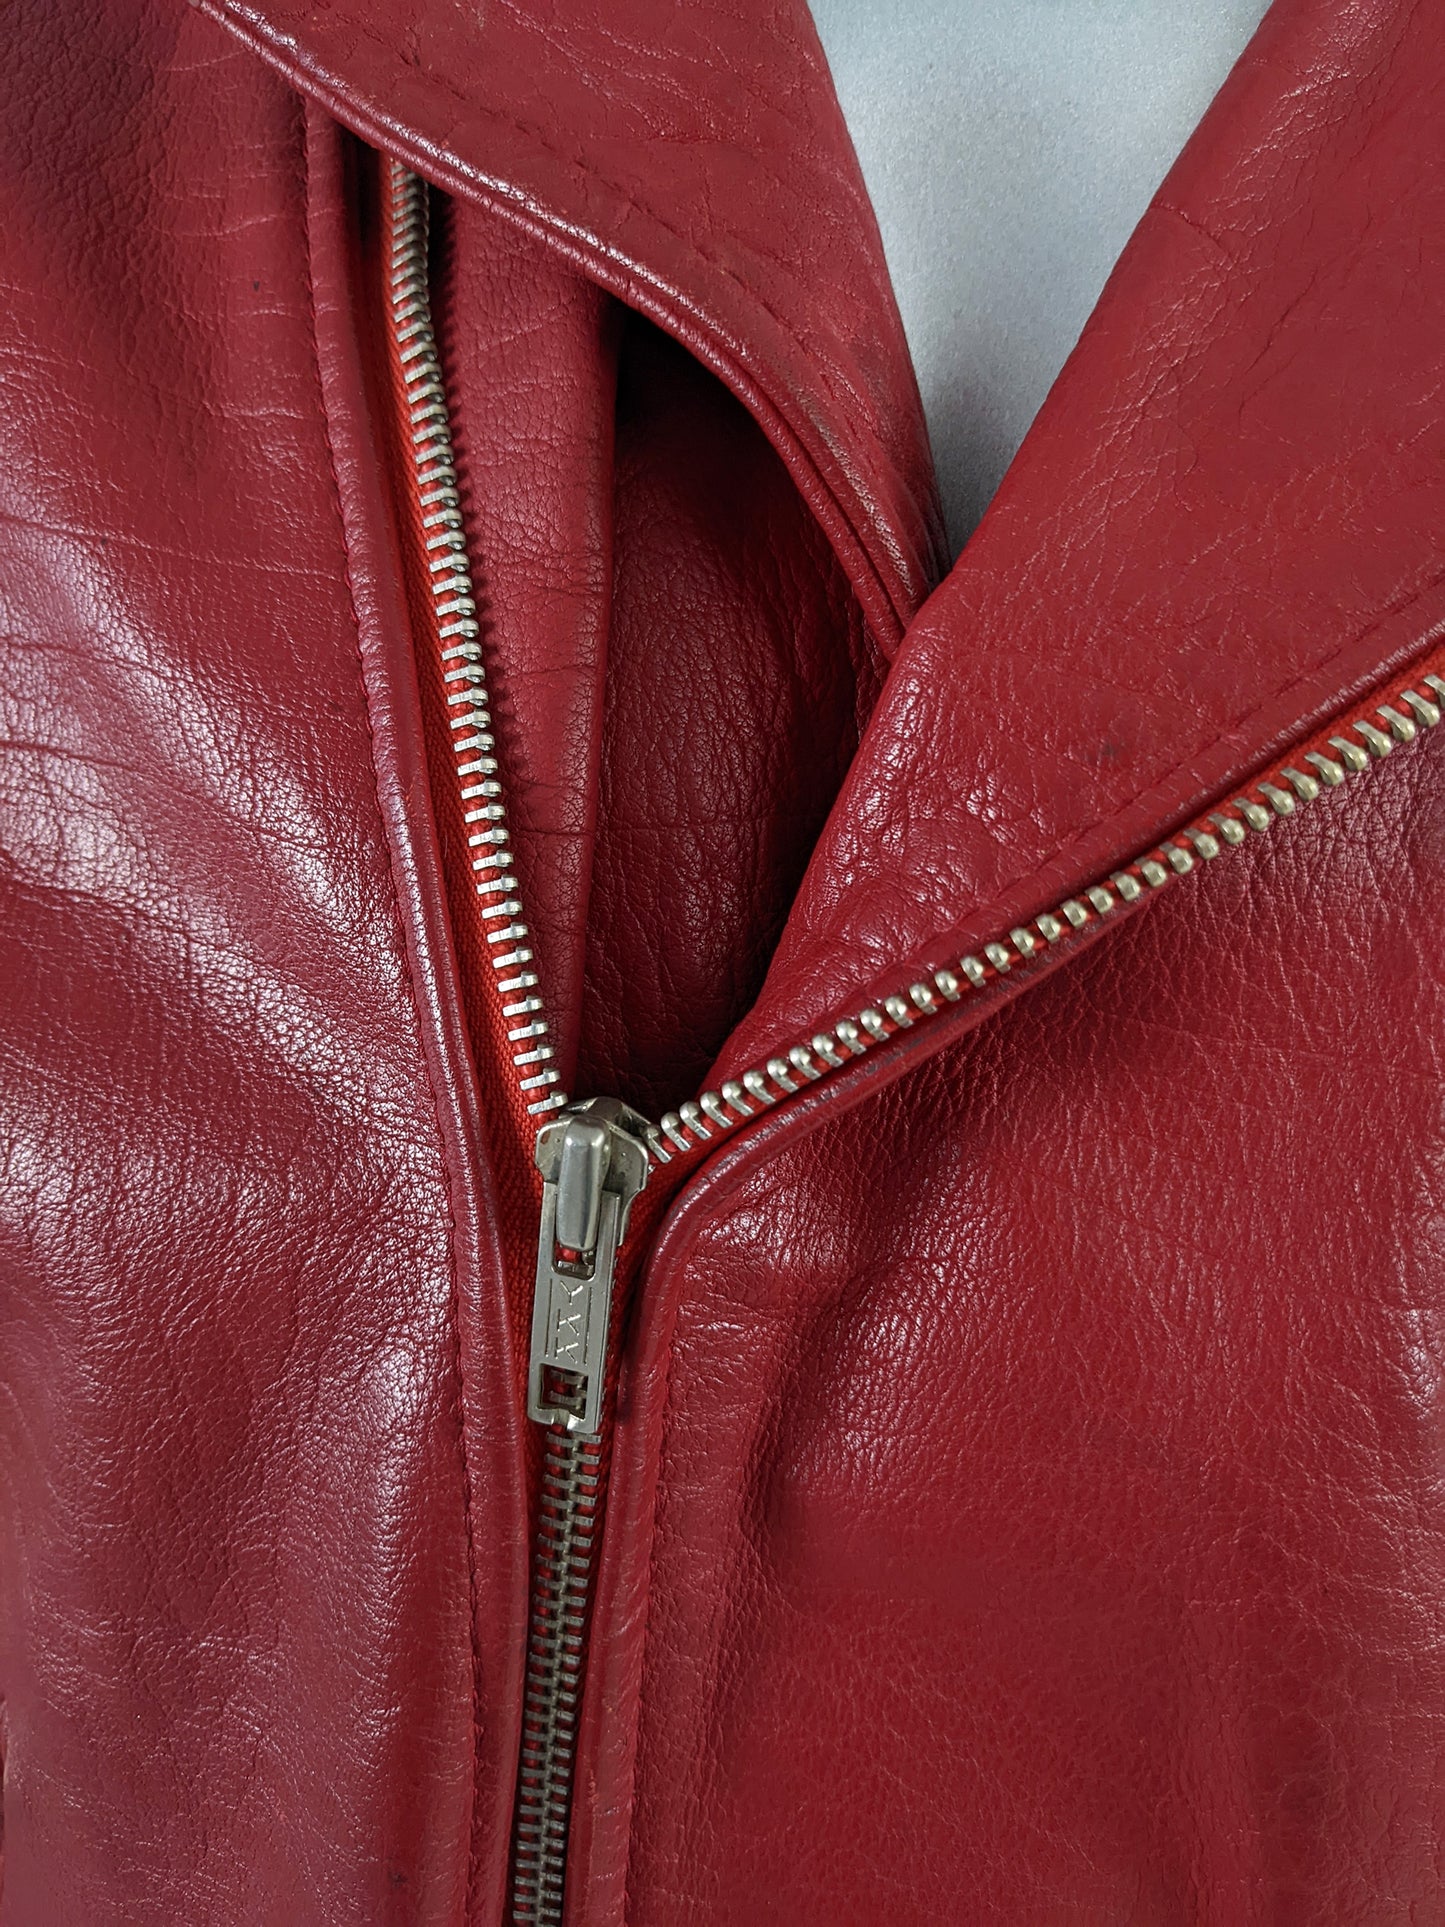 Chevignon Vintage Mens Red Leather Biker Vest, 1980s